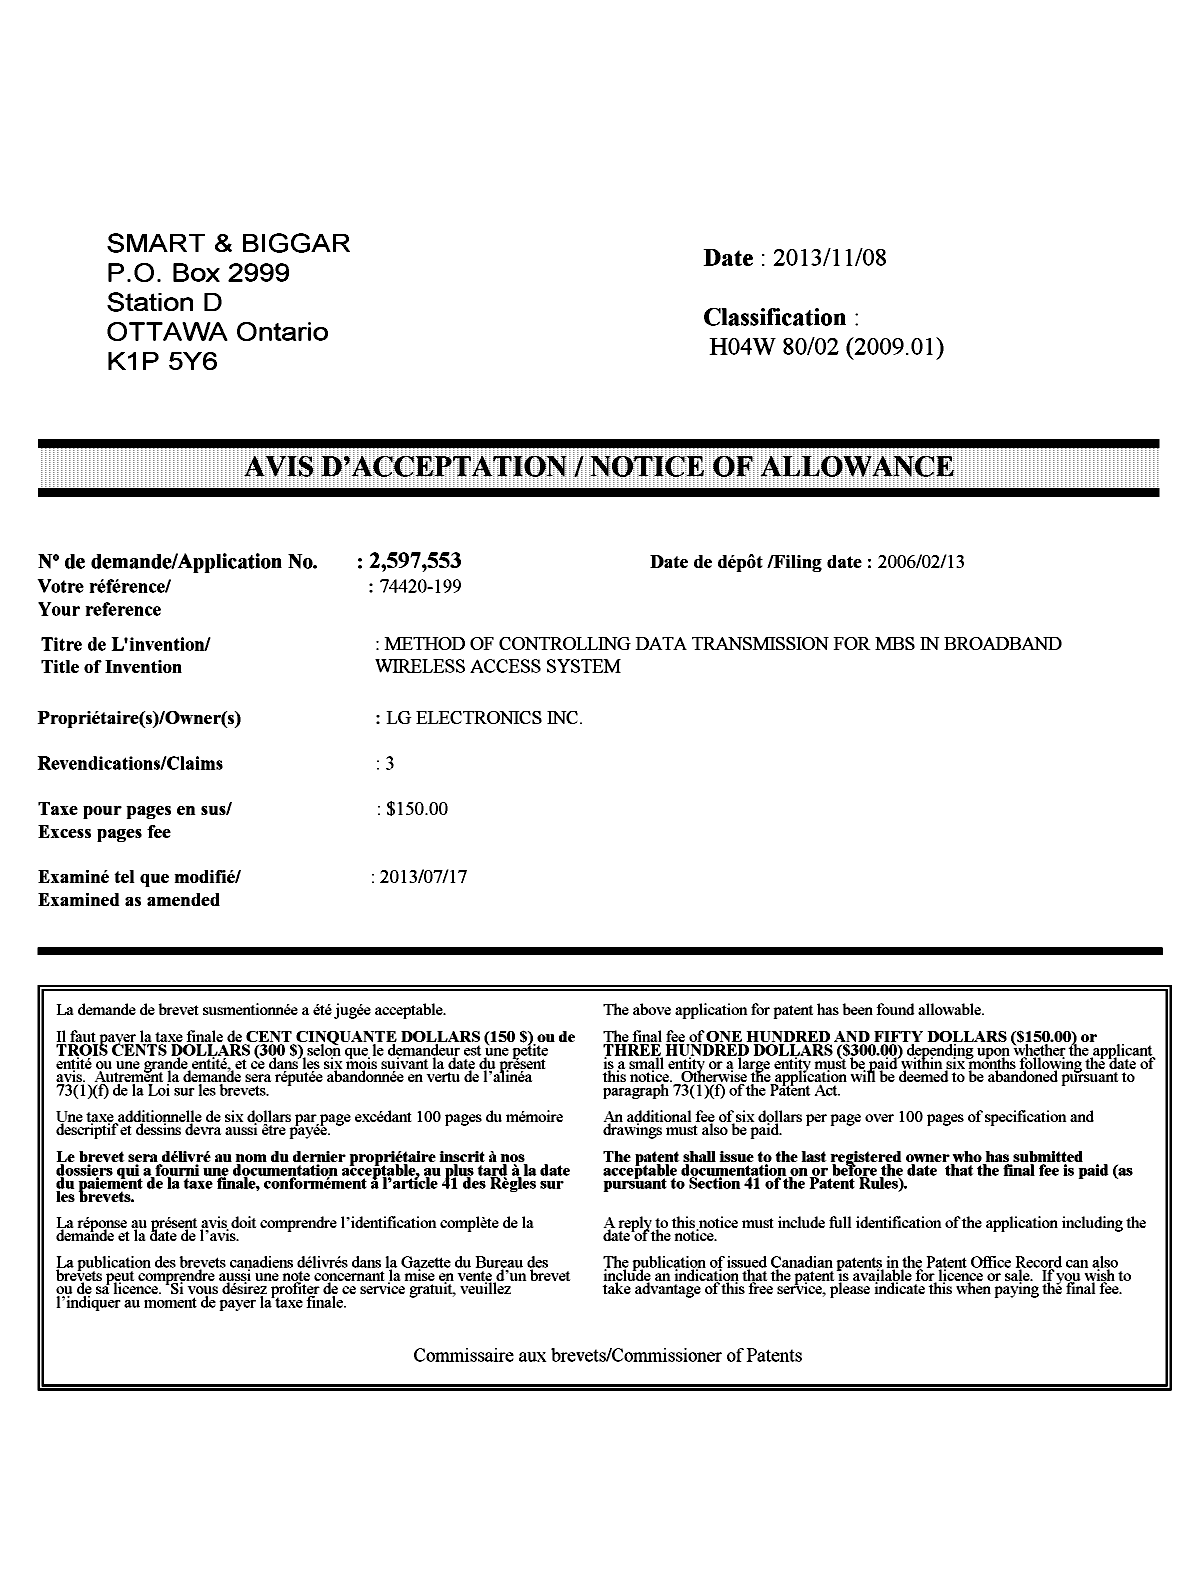 Document de brevet canadien 2597553. Correspondance 20131108. Image 1 de 1